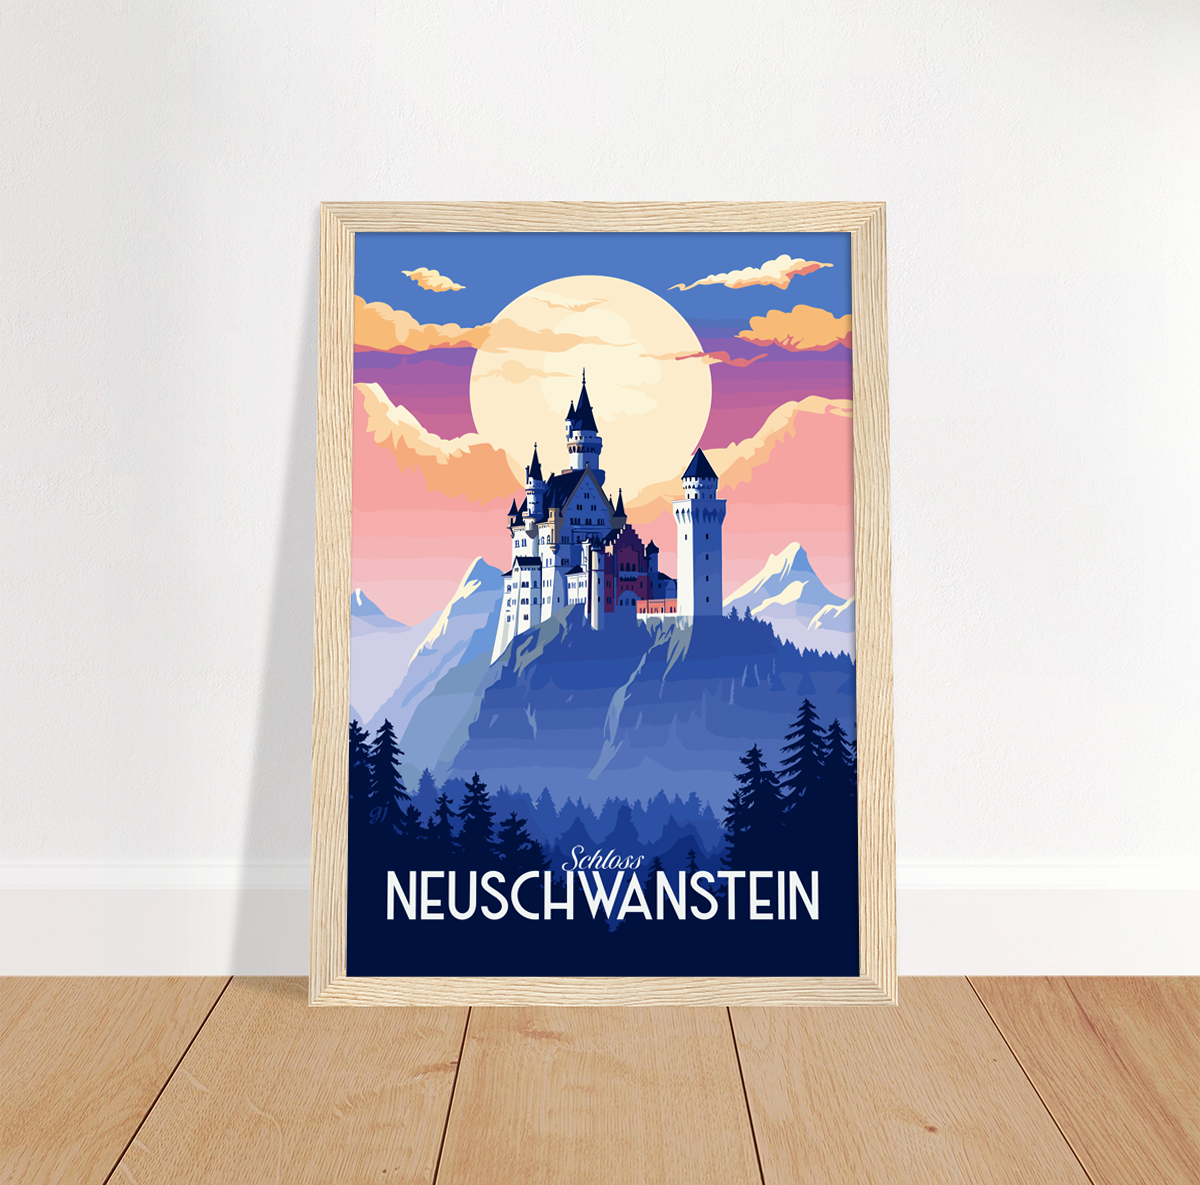 Neuschwanstein poster by bon voyage design